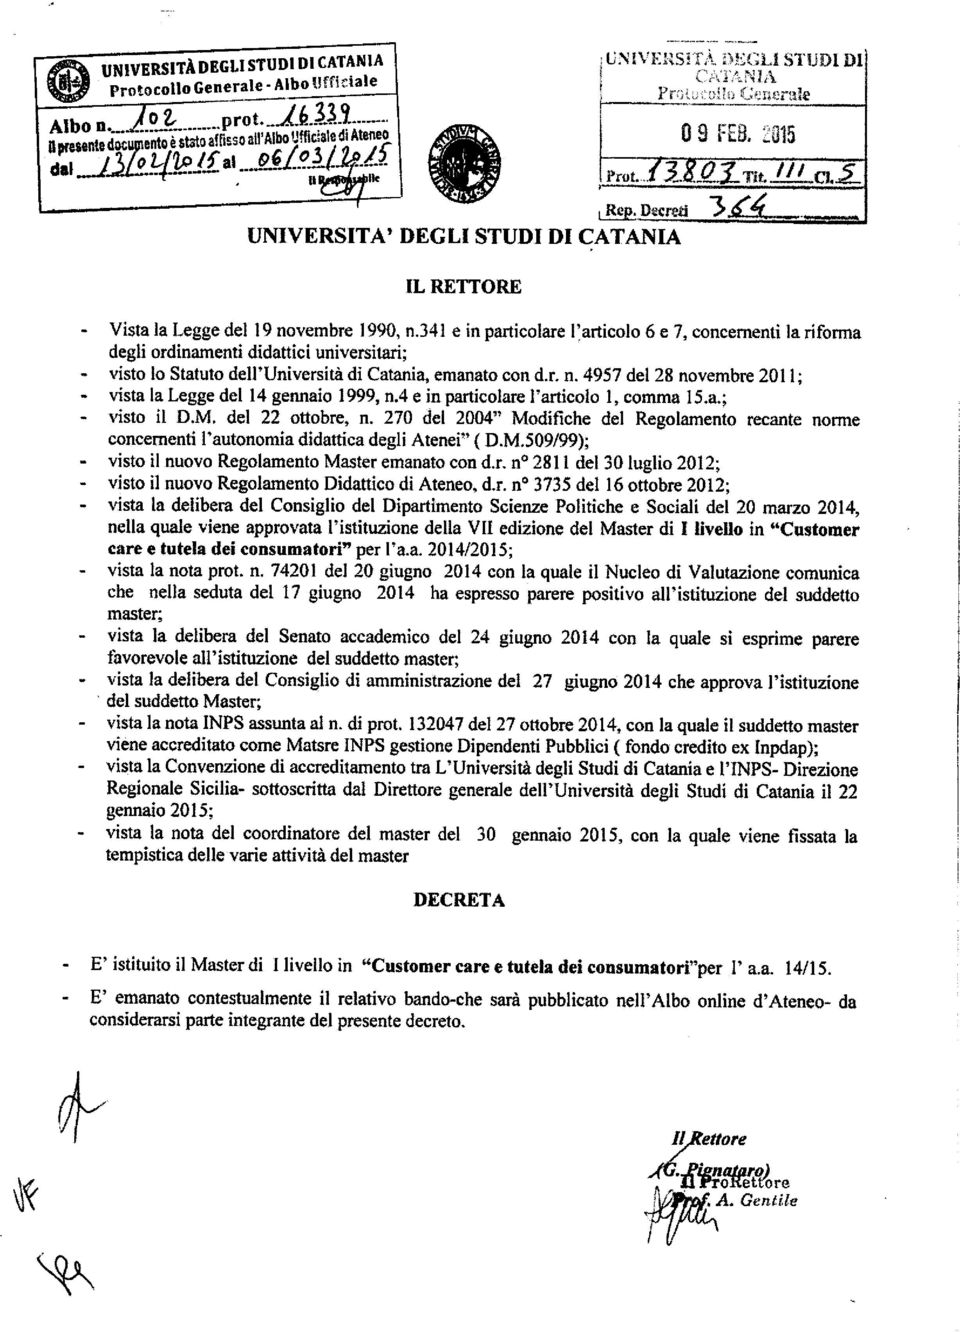 341 e in particolare l'articolo 6 e 7, concernenti la»forma degli ordinamenti didattici universitari; visto to Statuto dell'università di Catania, emanato con d.r. n.